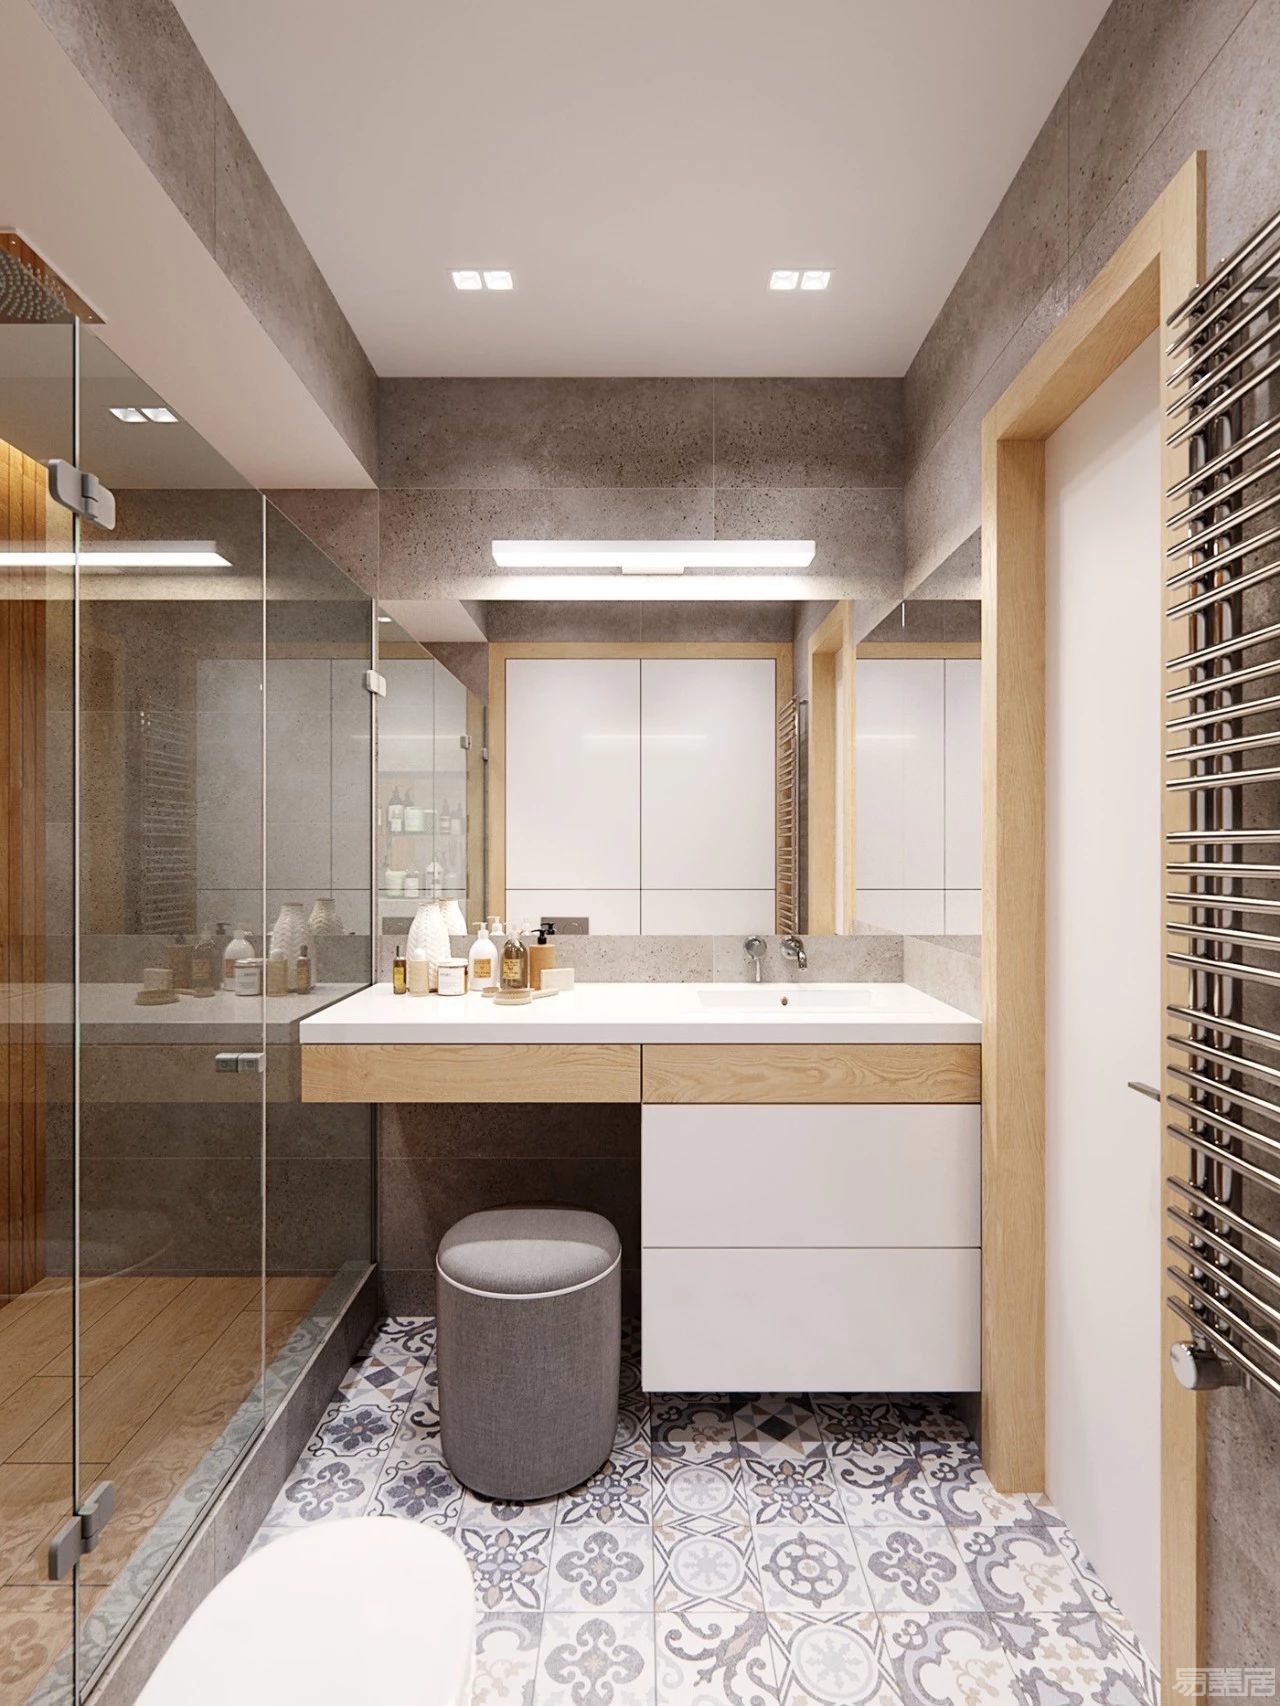 实木北欧浴室柜组合现代简约卫生间洗手盆柜组合小户型洗漱台吊柜-阿里巴巴